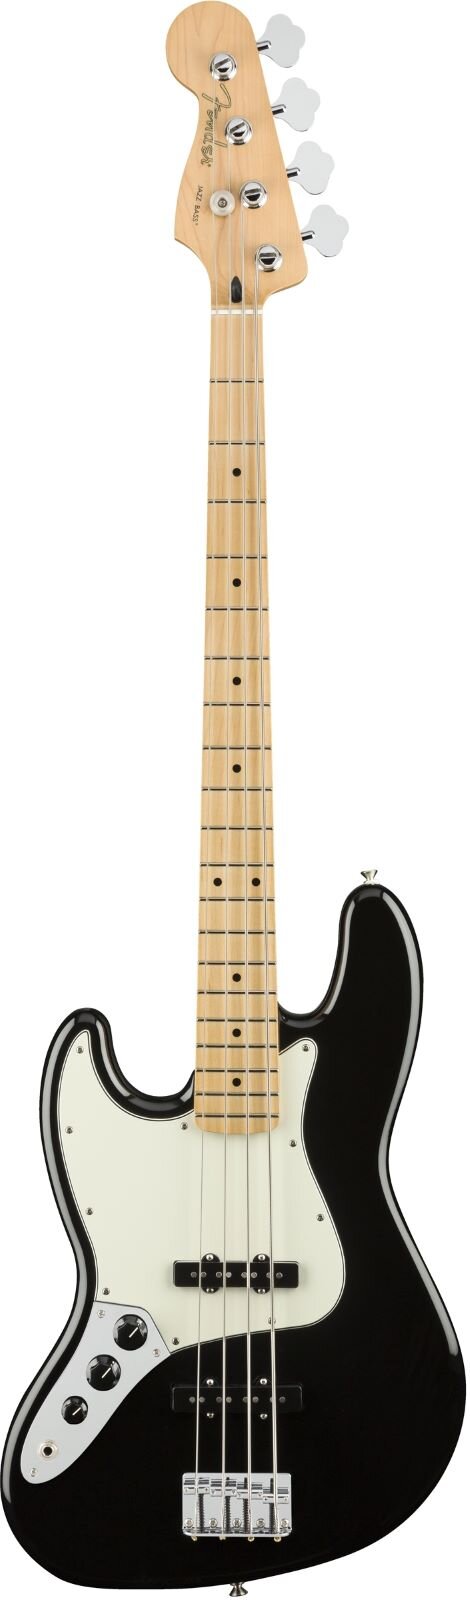 Fender Player Jazz Bass Linkshänder Ahorngriffbrett schwarz : photo 1